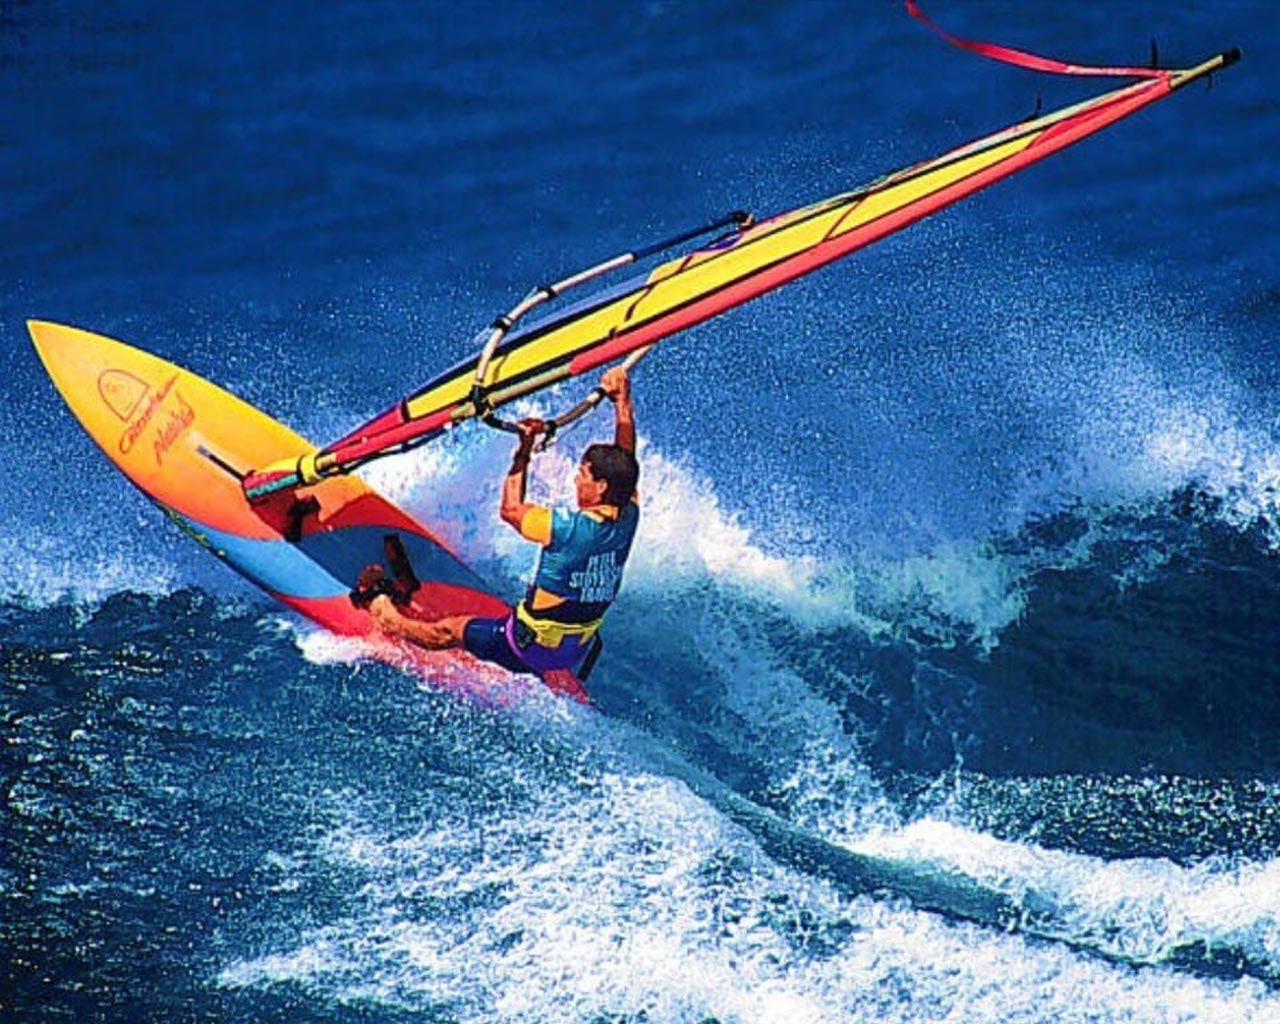 Wind Surfing. Kite surfing, Wind surfing photography, Windsurfing